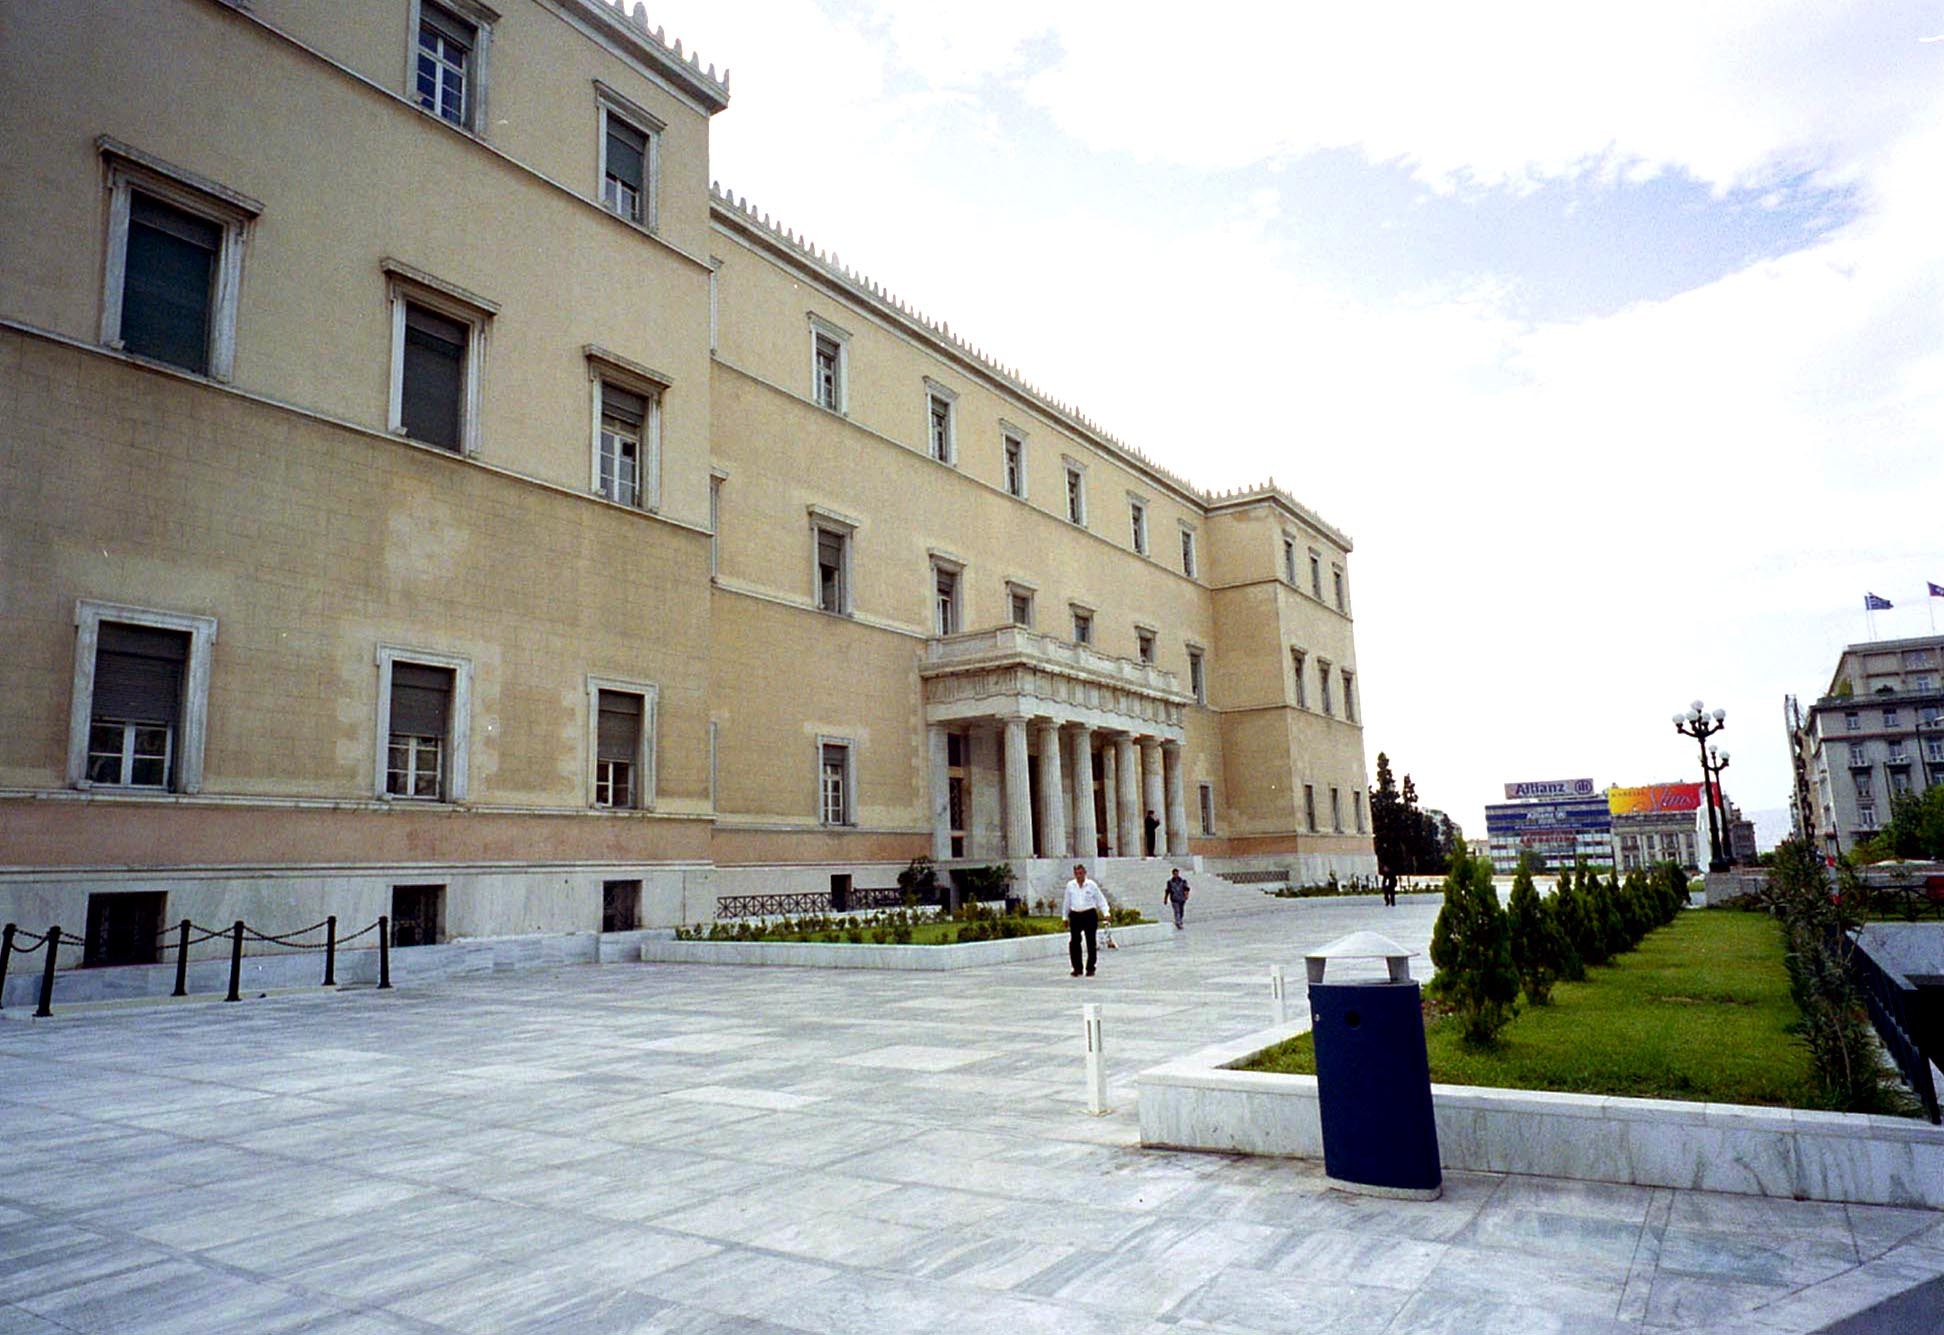 Κατέθεσε πρόταση ο ΣΥΡΙΖΑ για Εξεταστική για το Μνημόνιο